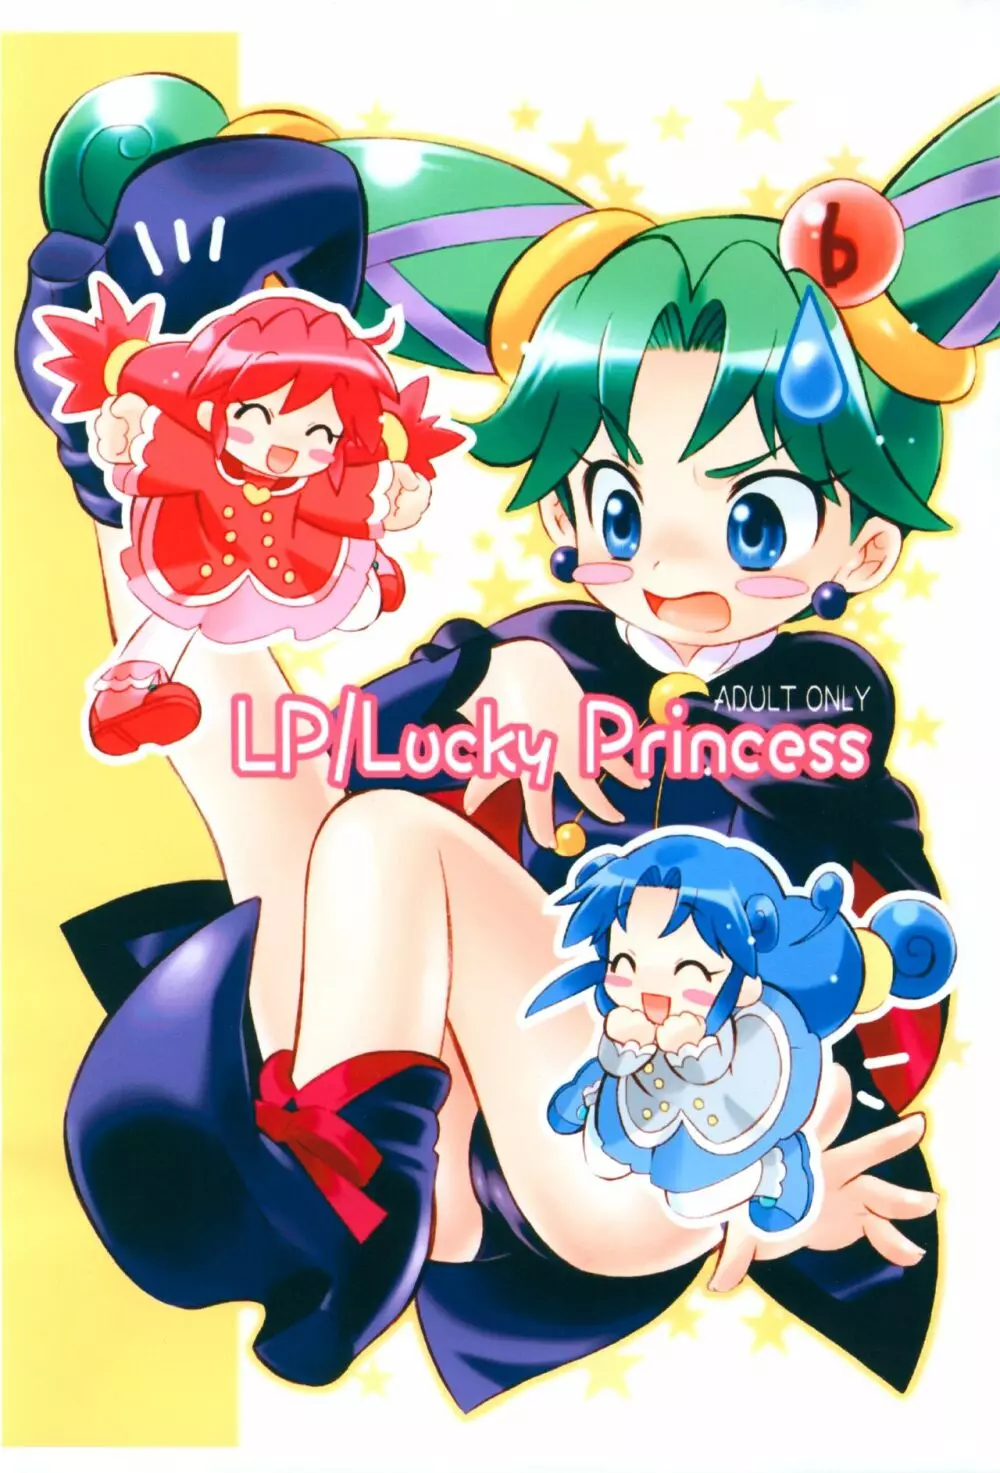 LP/Lucky Princess